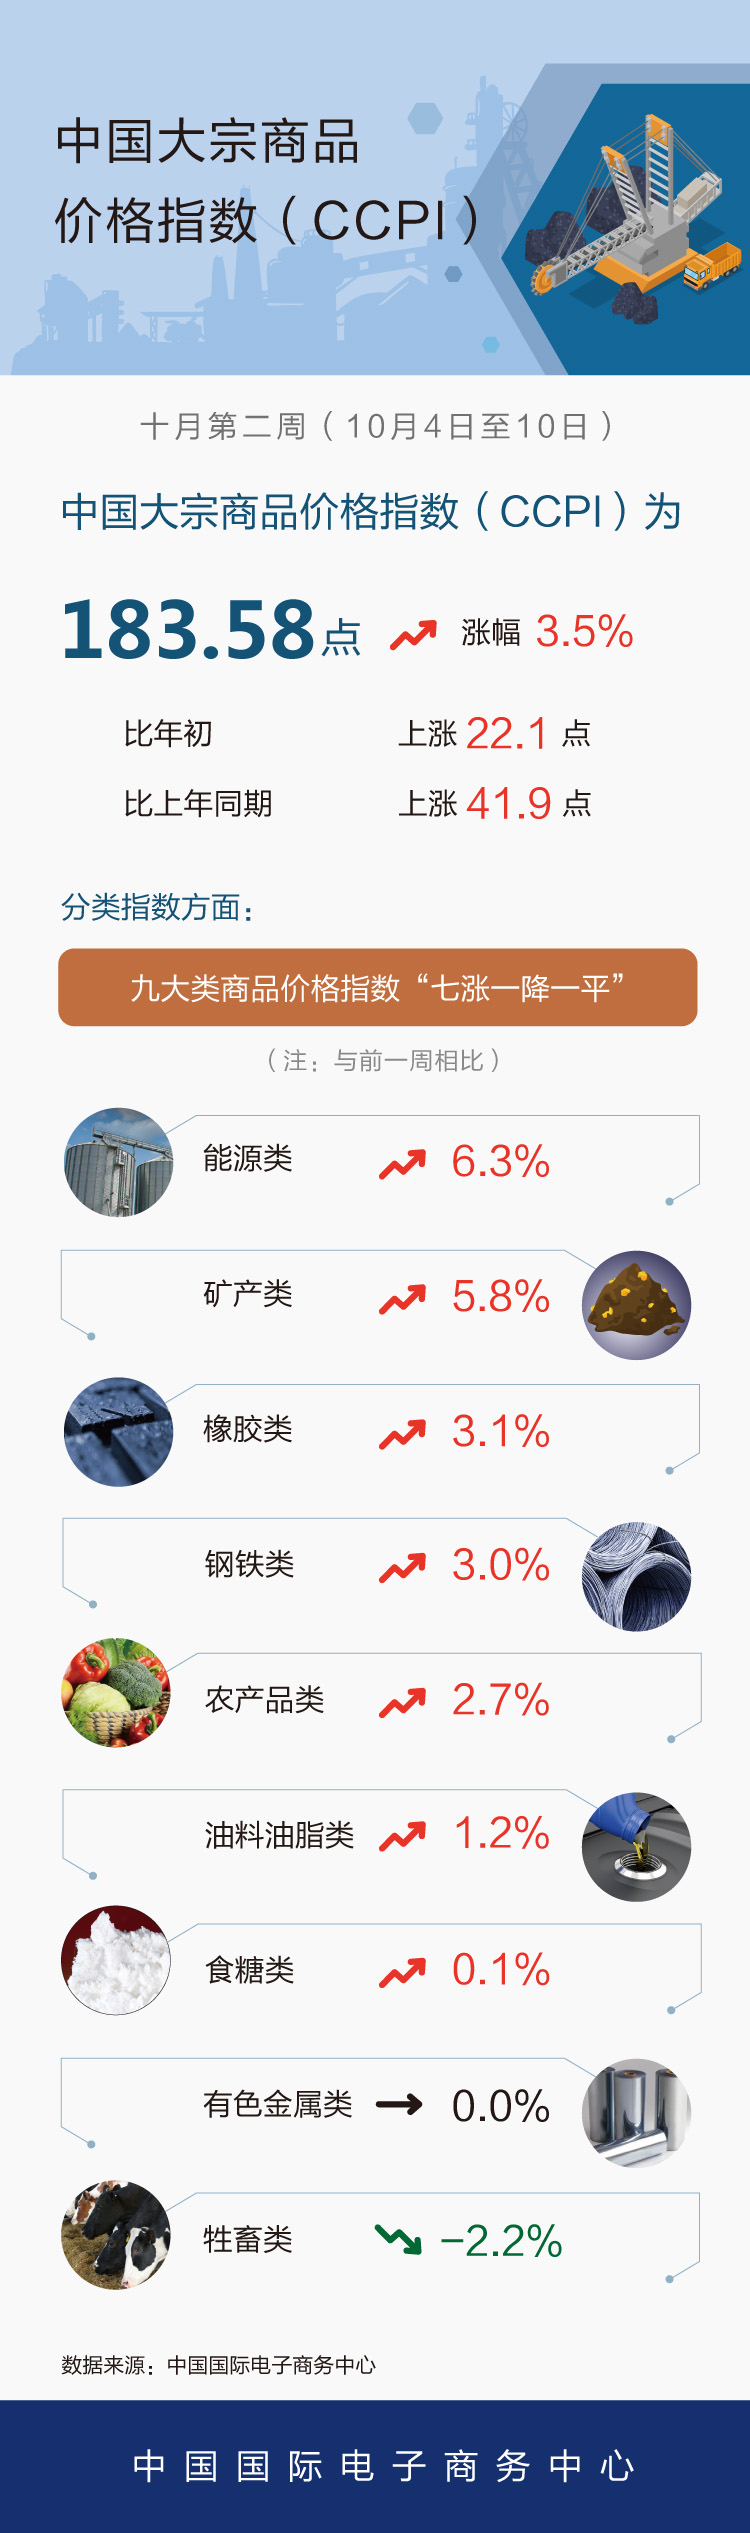 10月第2周中国大宗商品价格指数小幅上涨 能源类上涨6.3%